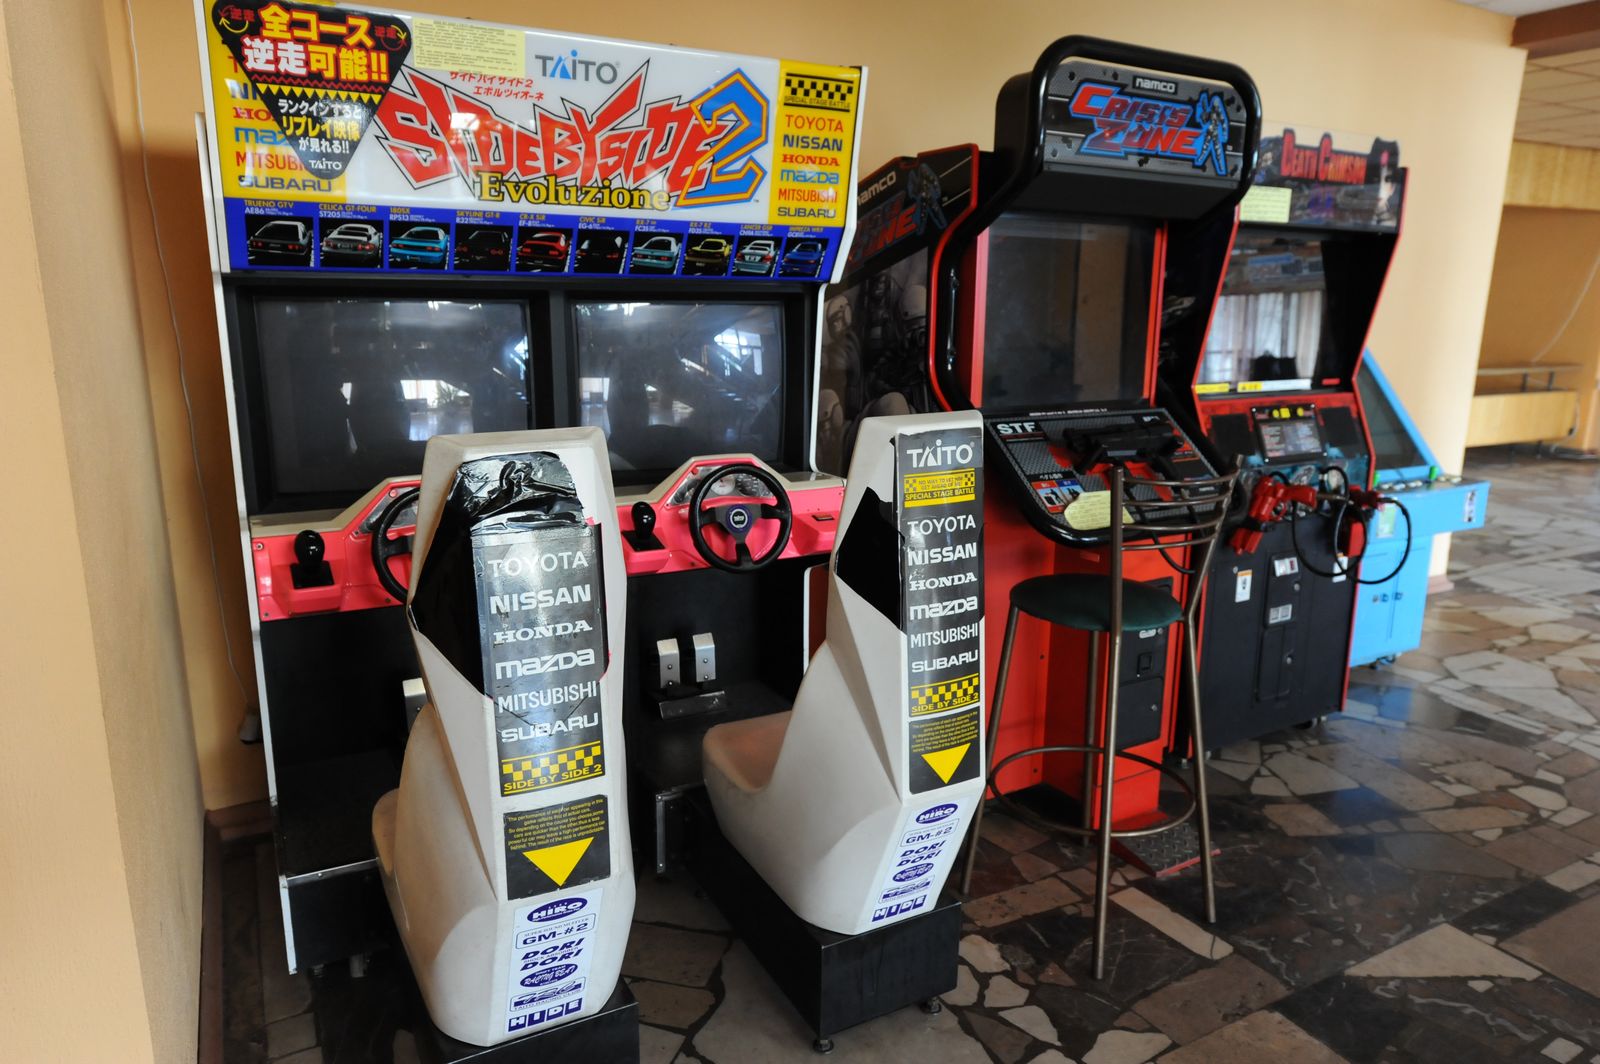 бизнес игровые автоматы в магазинах